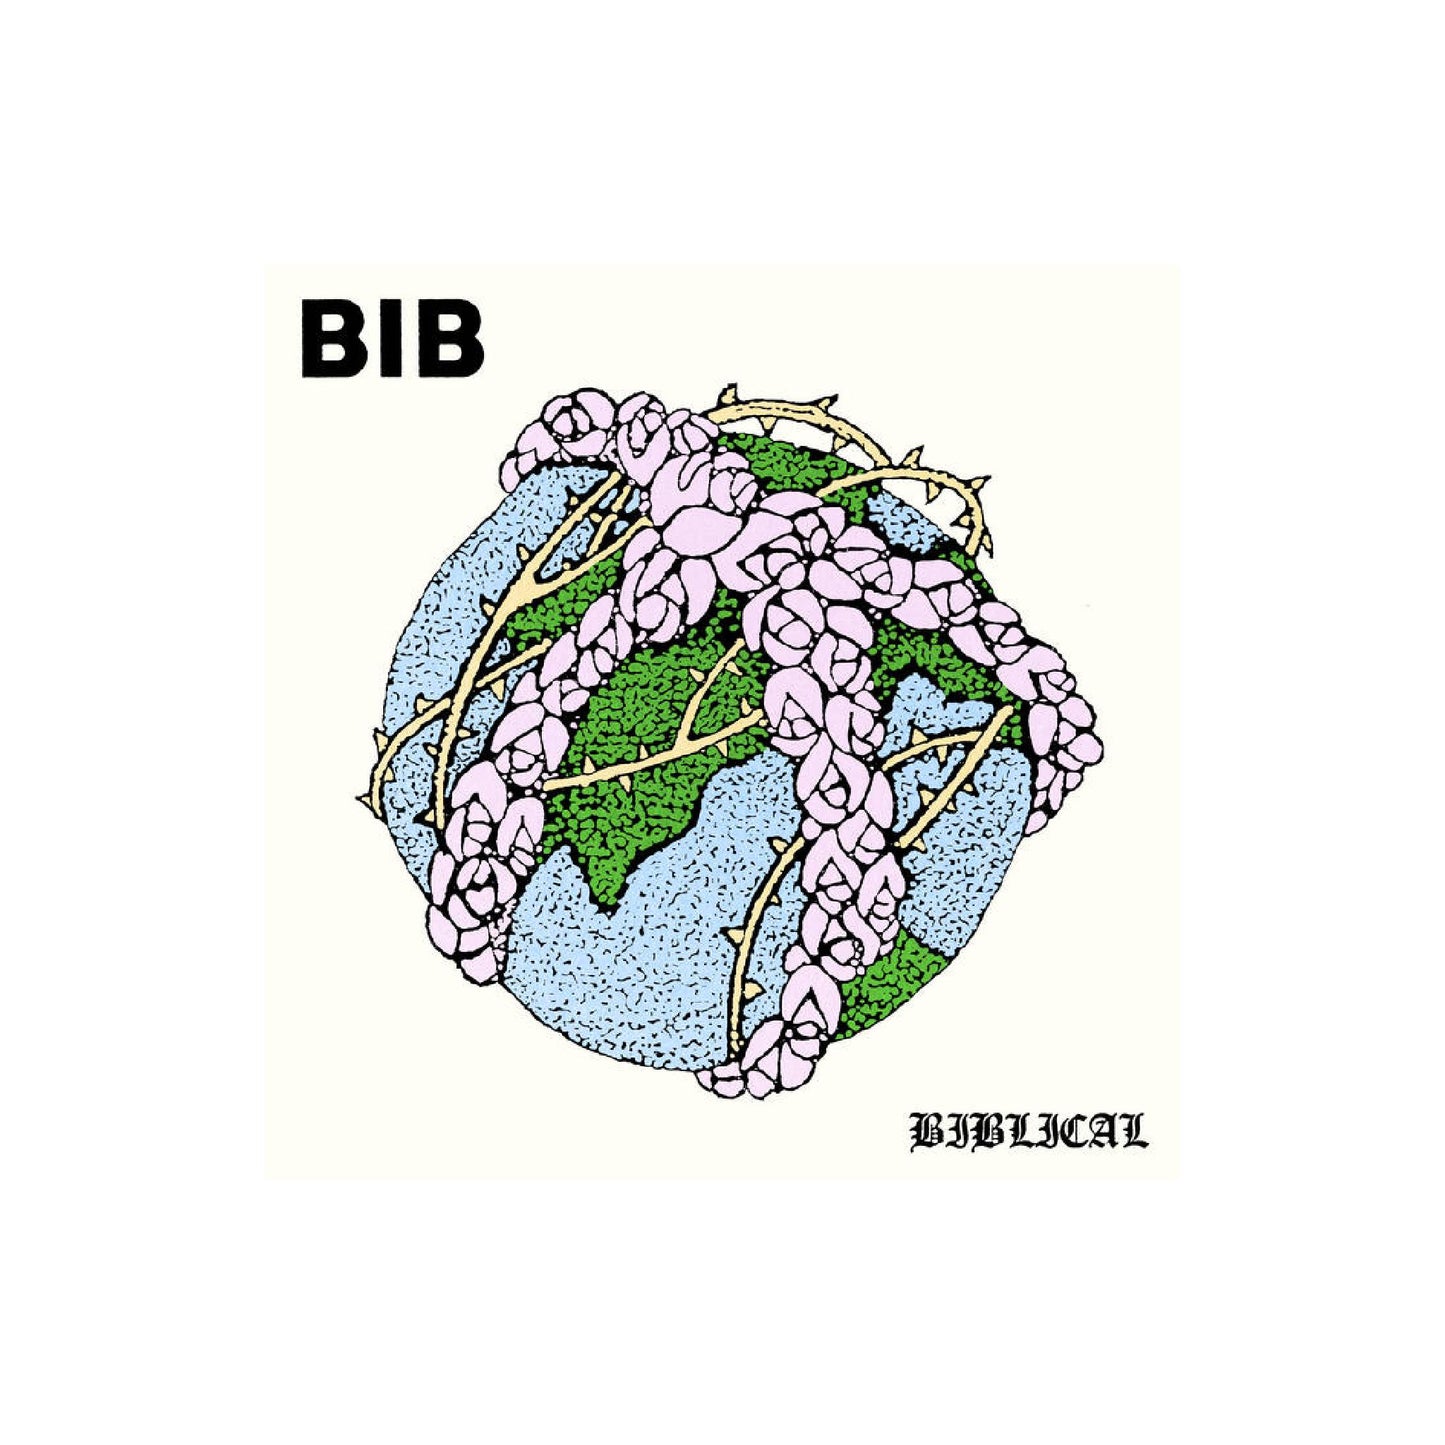 Bib - Biblical 7" EP (black vinyl)